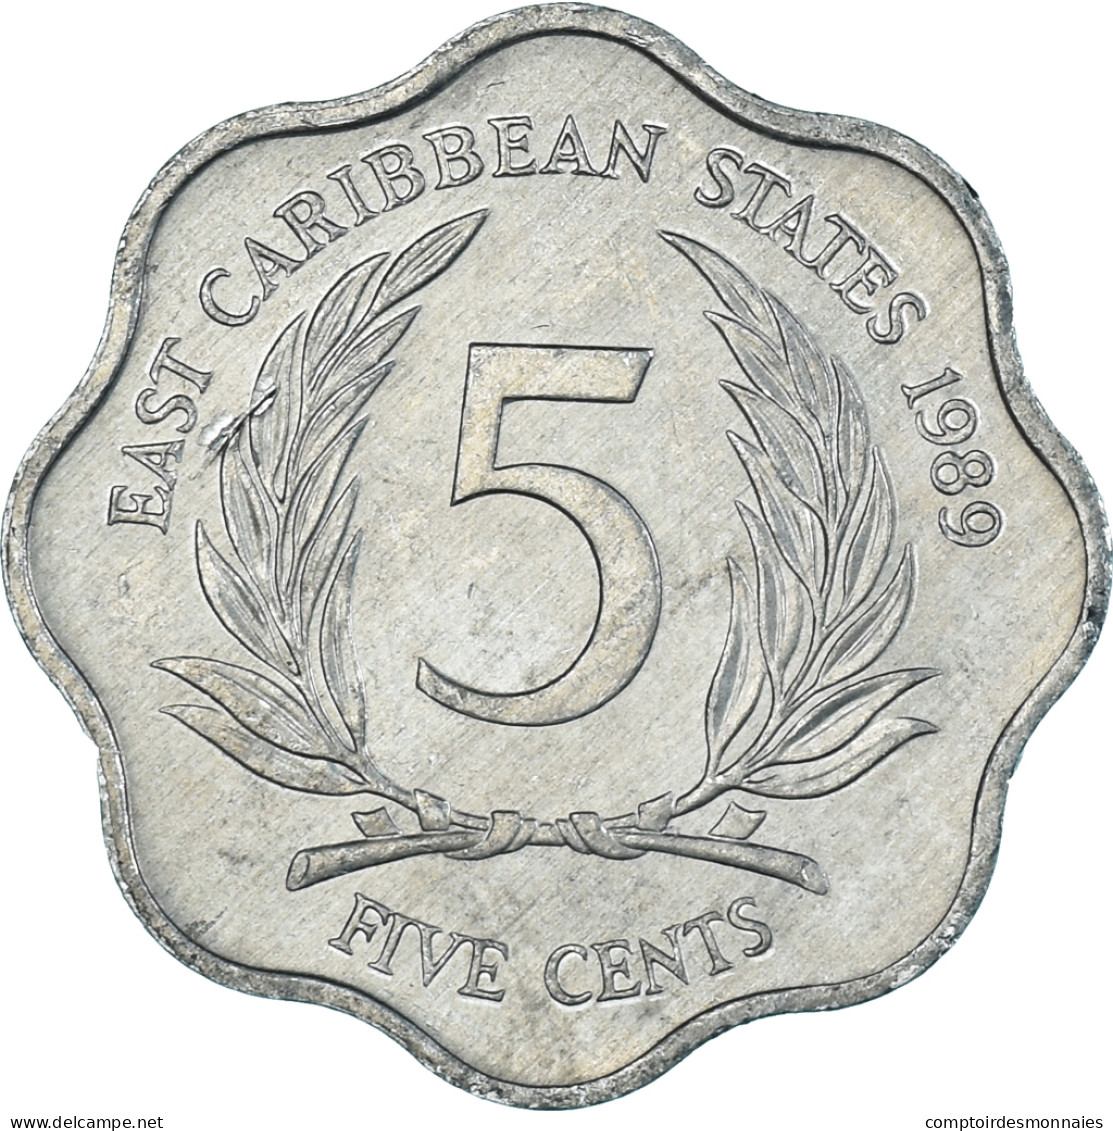 Monnaie, Etats Des Caraibes Orientales, 5 Cents, 1989 - Caribe Oriental (Estados Del)